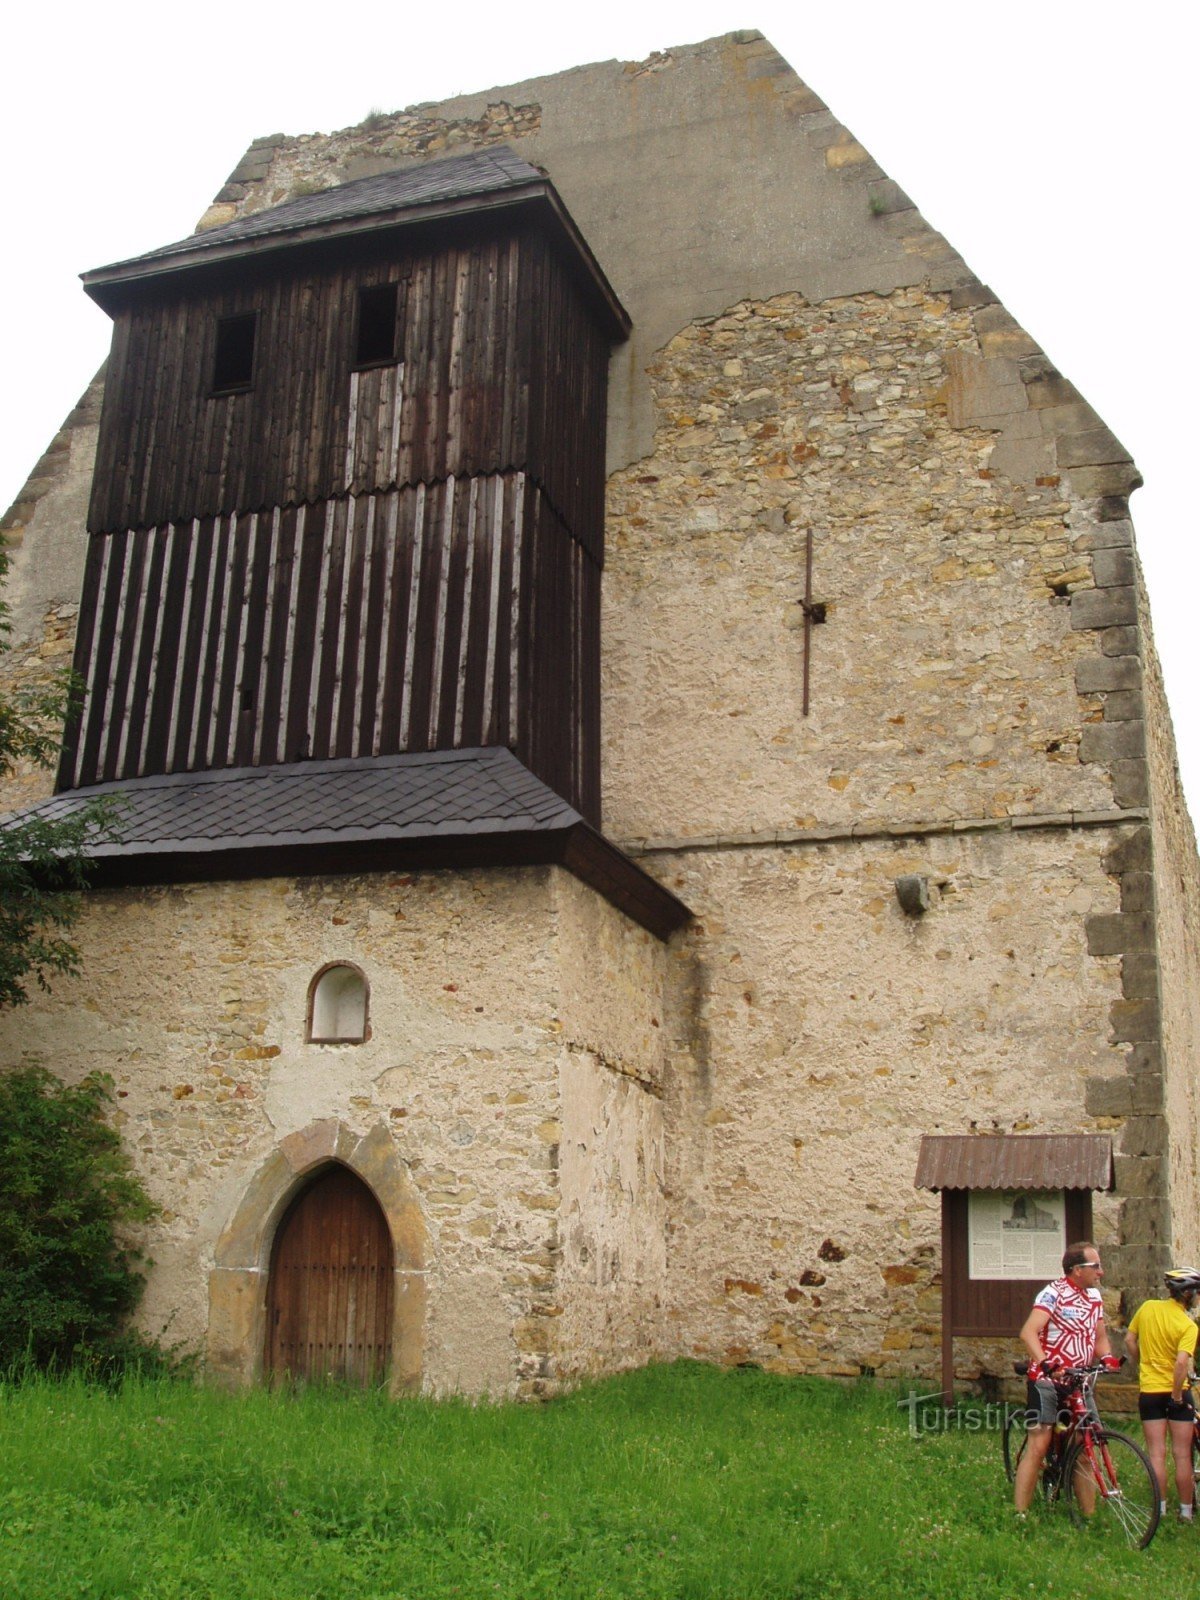 Ostanki samostanske cerkve z zvonikom